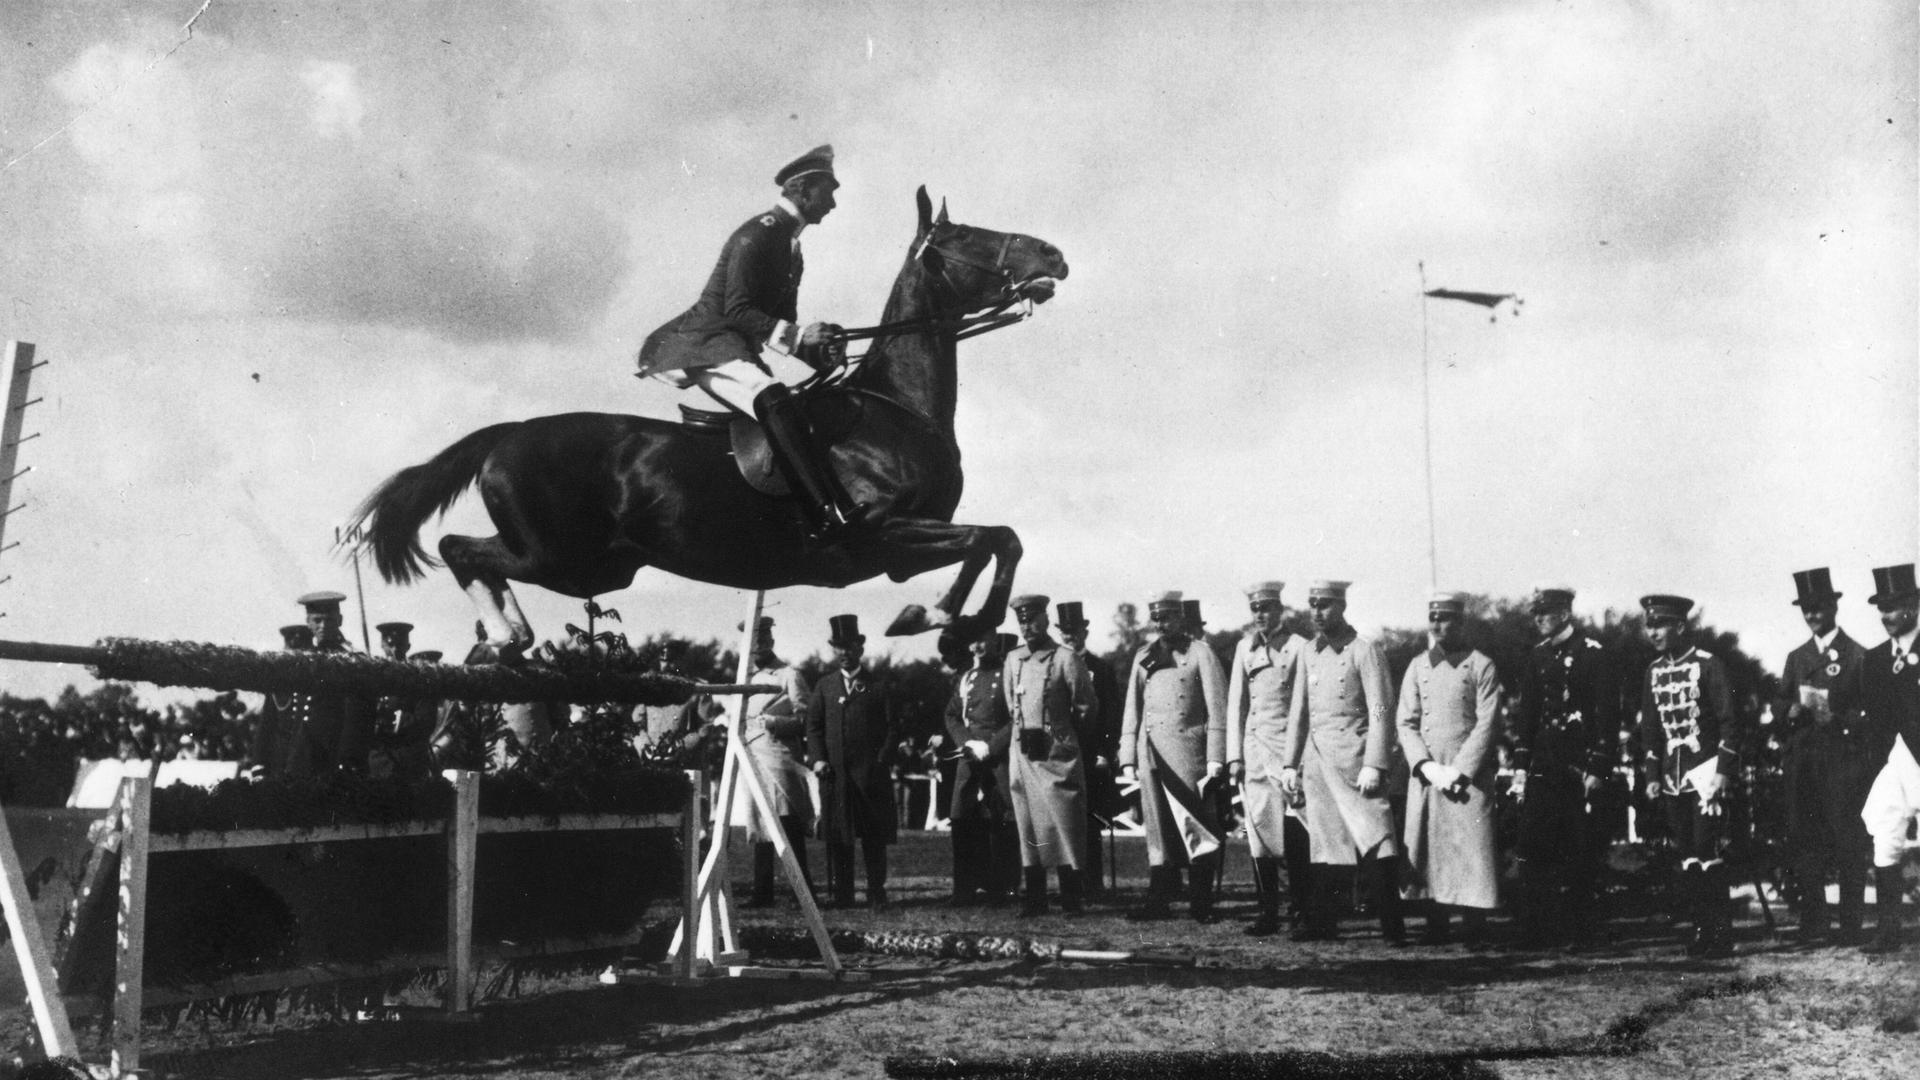 Kronprinz Wilhelm springt auf seiner Fuchsstute beim Concours hippique in Schwerin über ein Hindernis (Foto, um 1910).